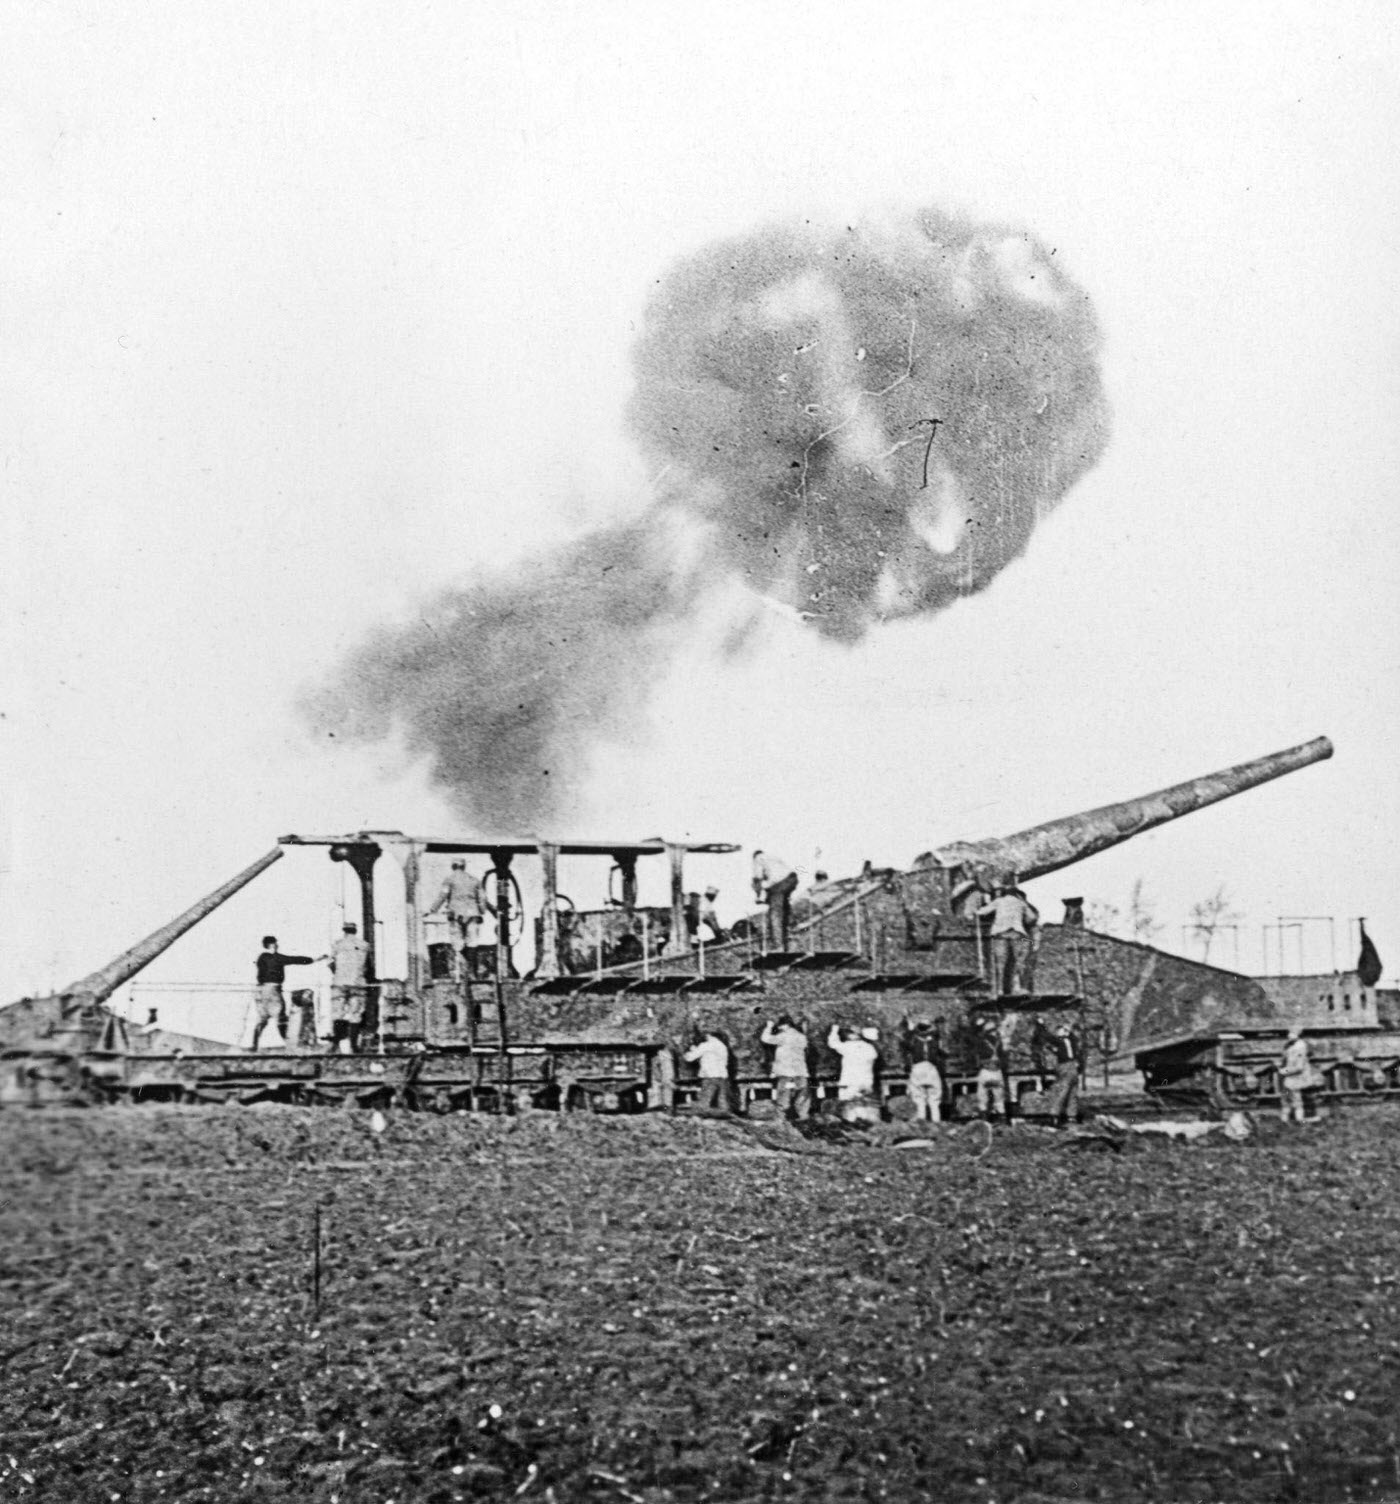 British 16-inch railway guns in action during World War I